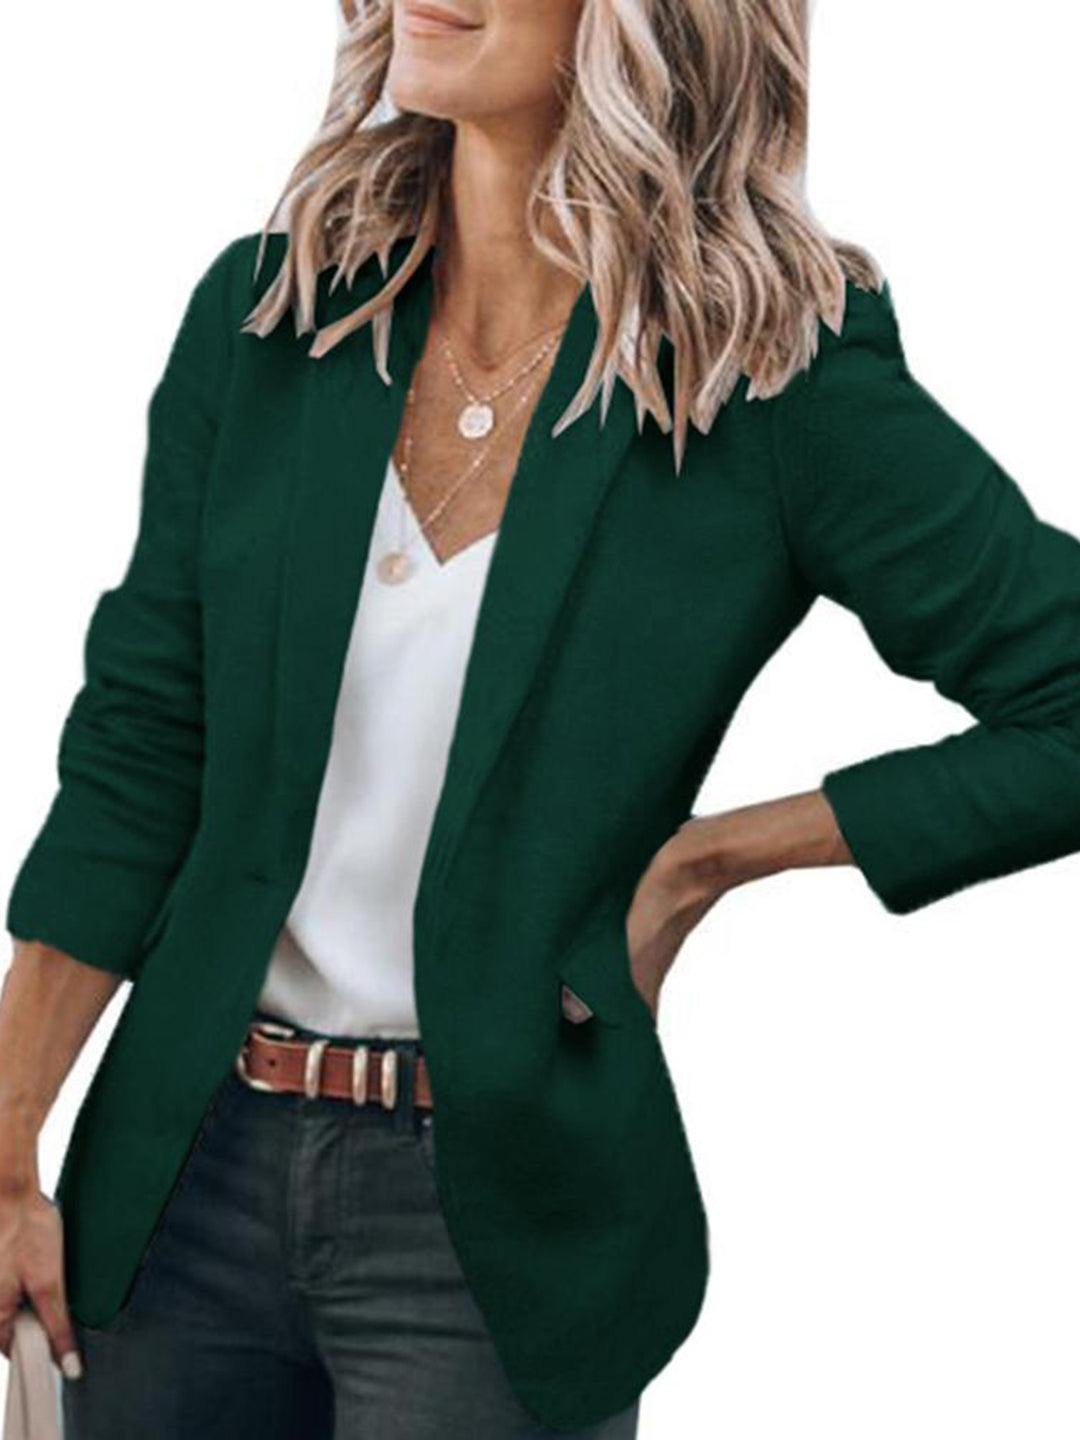 Women's Office Business Blazers Formal Long Sleeve Lapel Pockets Work Office Jackets Blazer